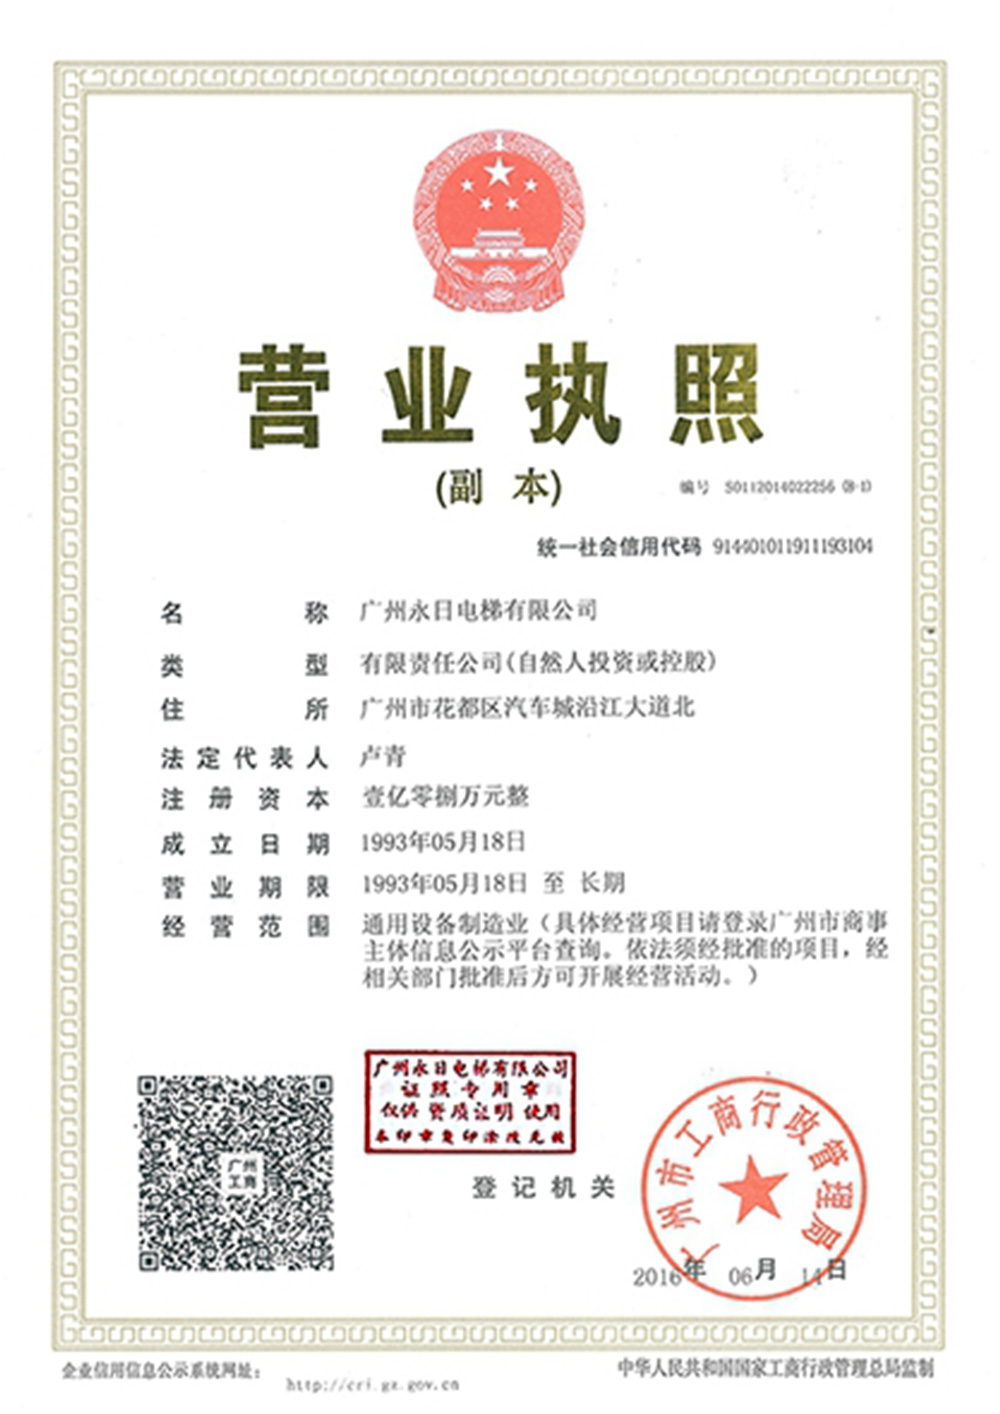 Business License (Guangzhou)